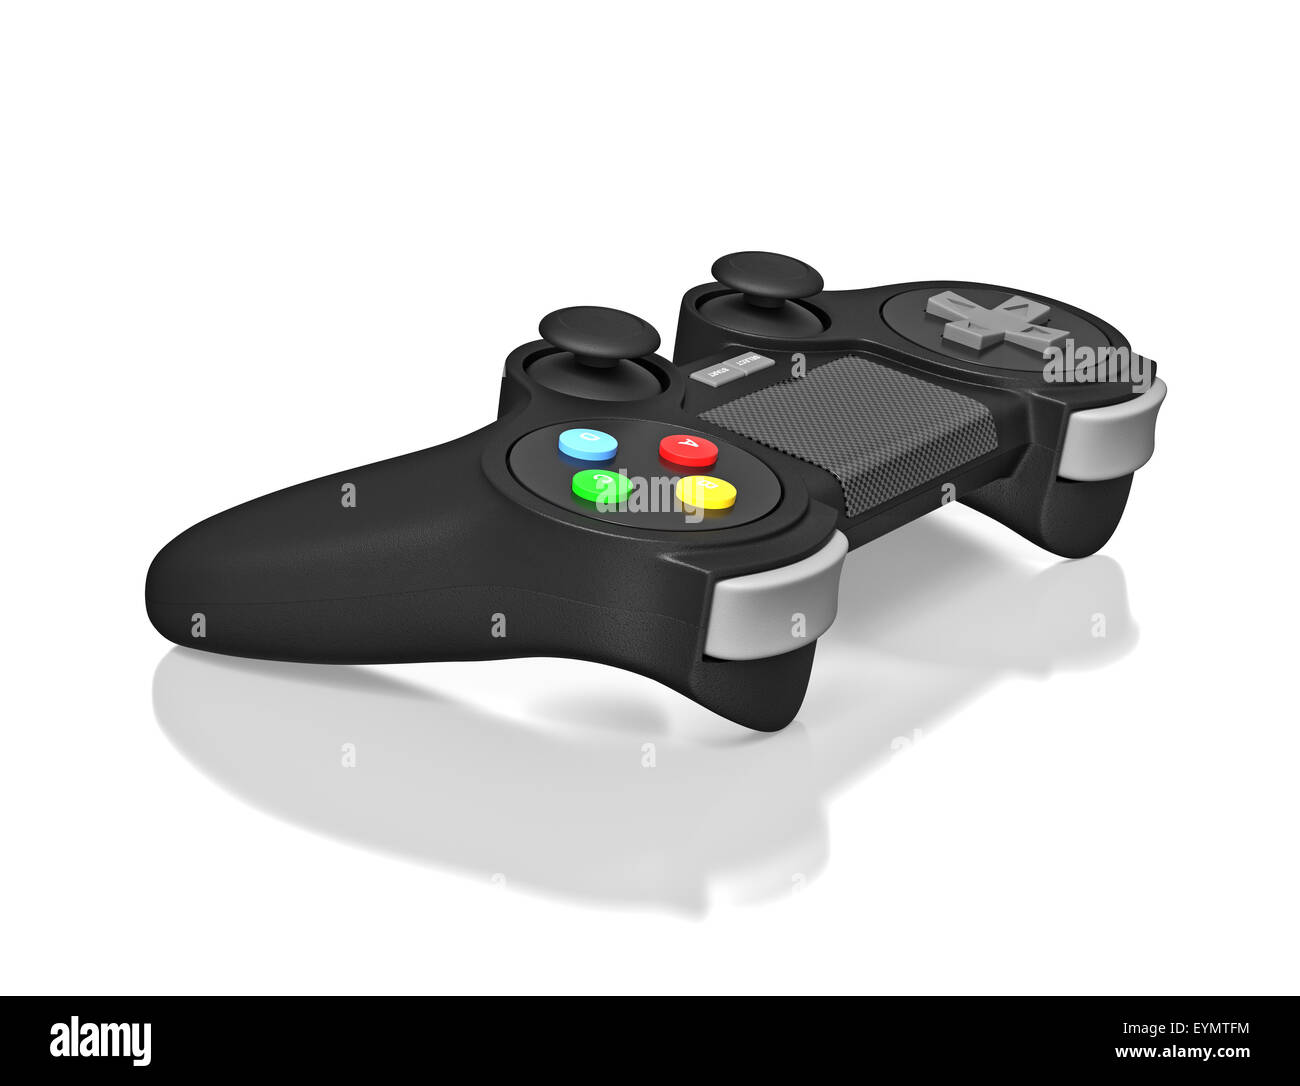 Joypad Gamepad per console per video game isolato su sfondo bianco con la riflessione Foto Stock